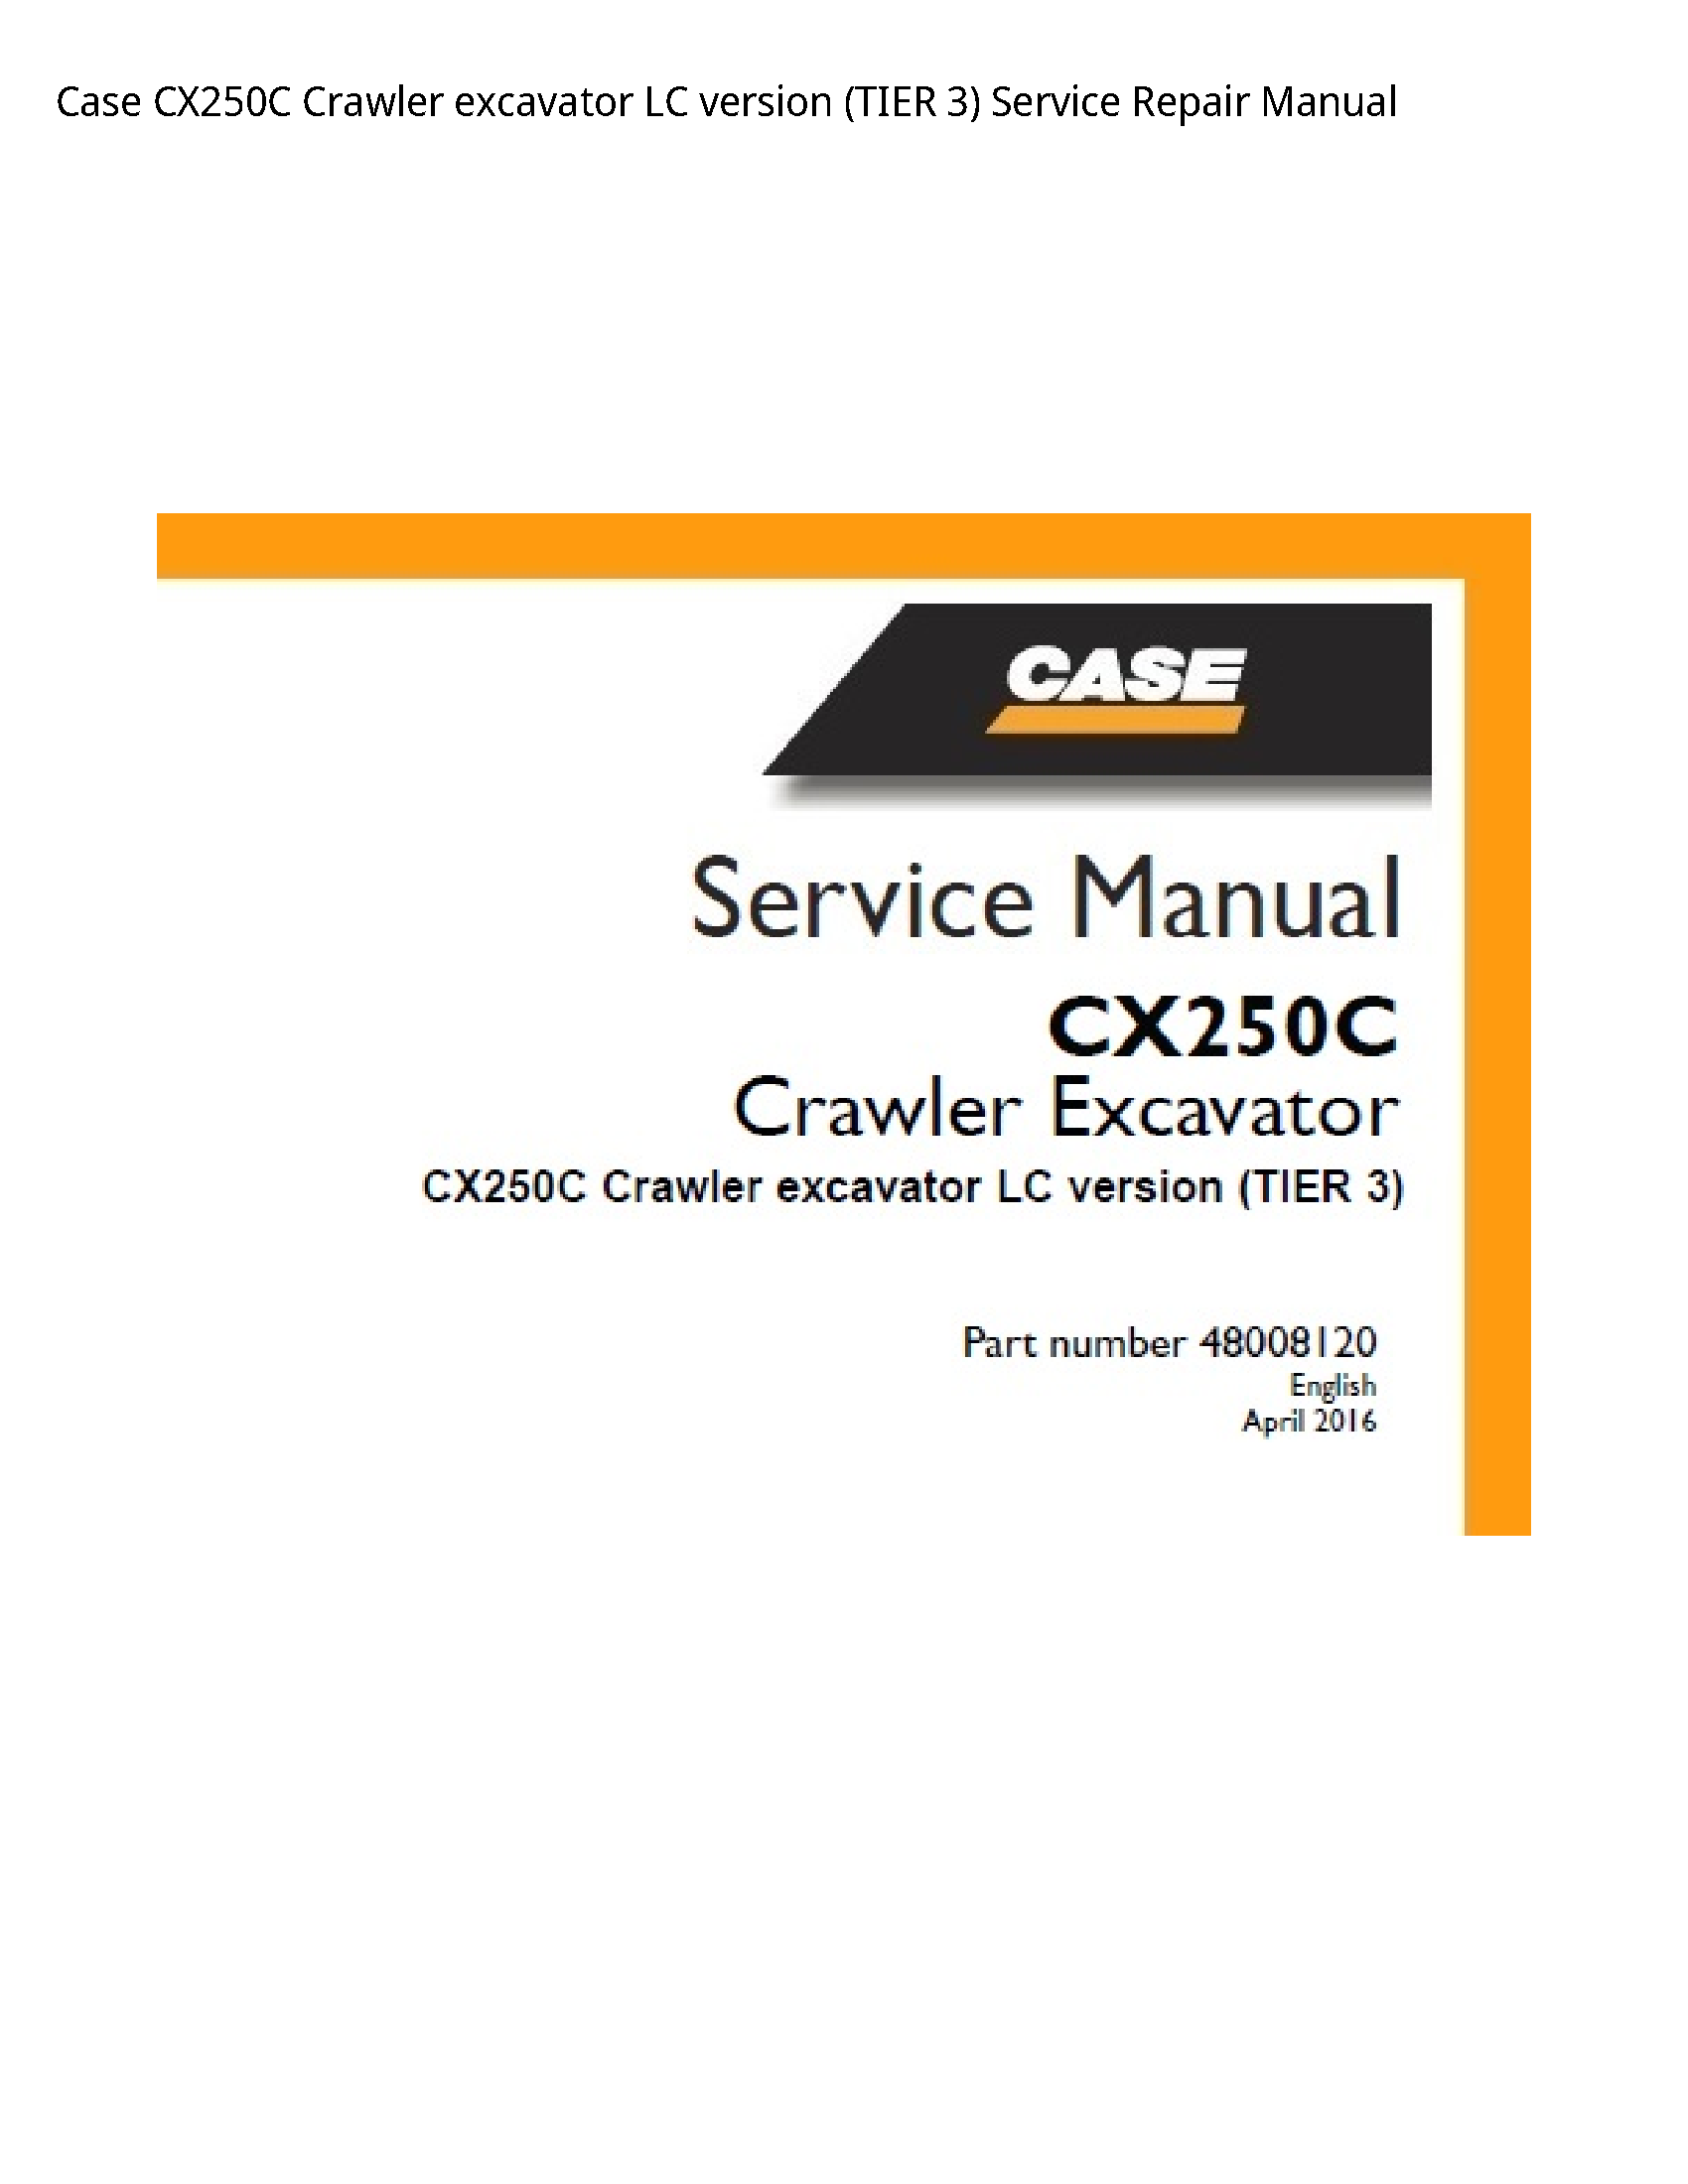 Case/Case IH CX250C Crawler excavator LC version (TIER manual